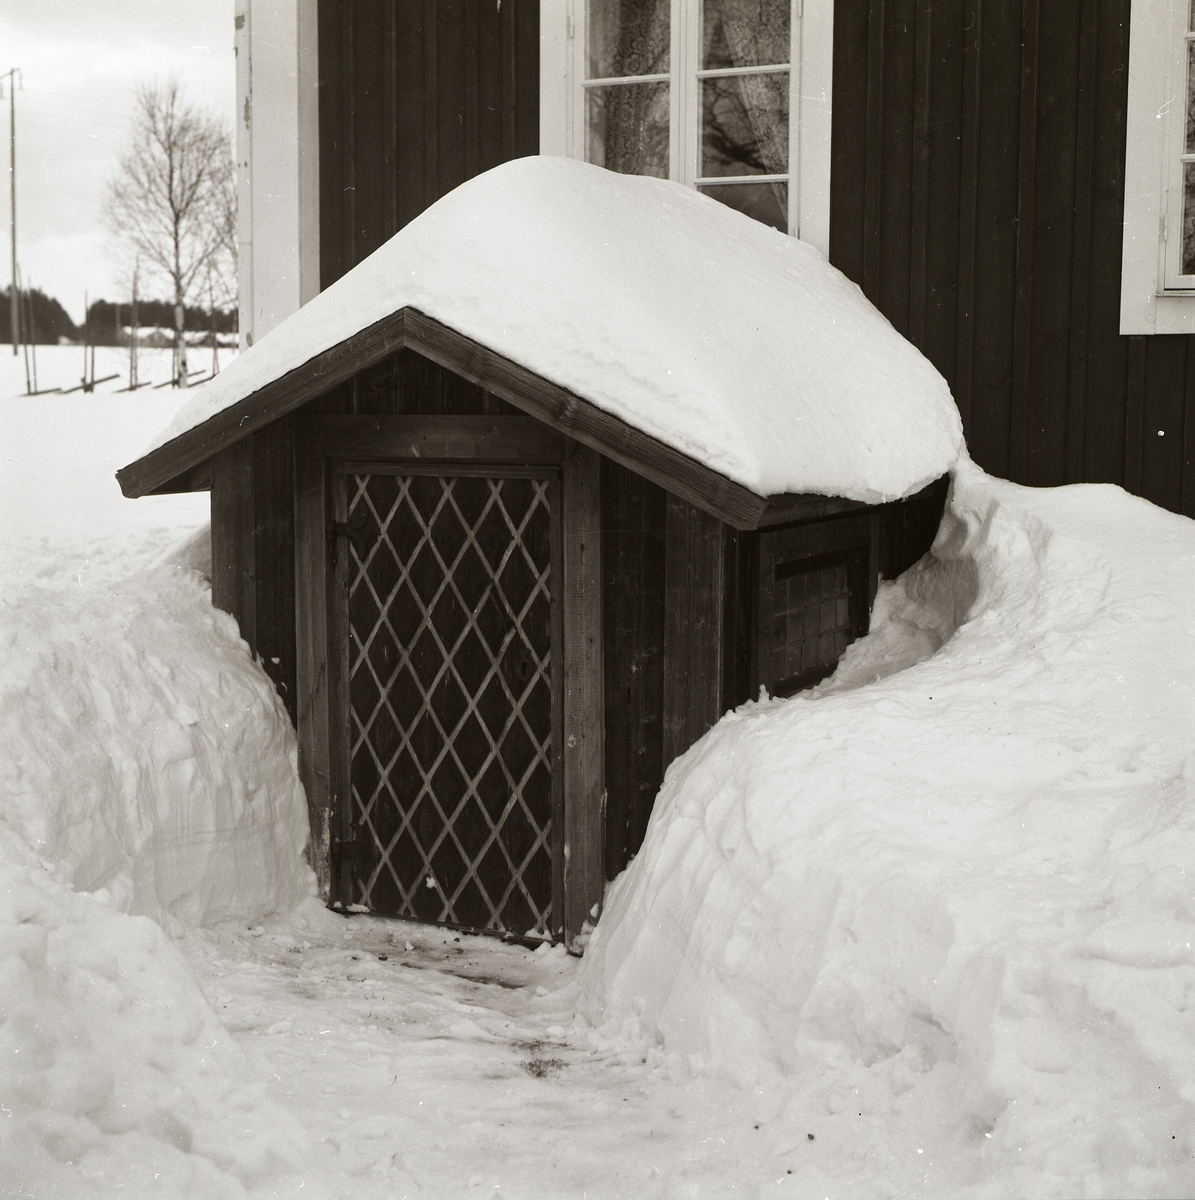 Källarkur med sadeltak på gården Sunnanåker, december 1981. Snö på taket och snödrivor.